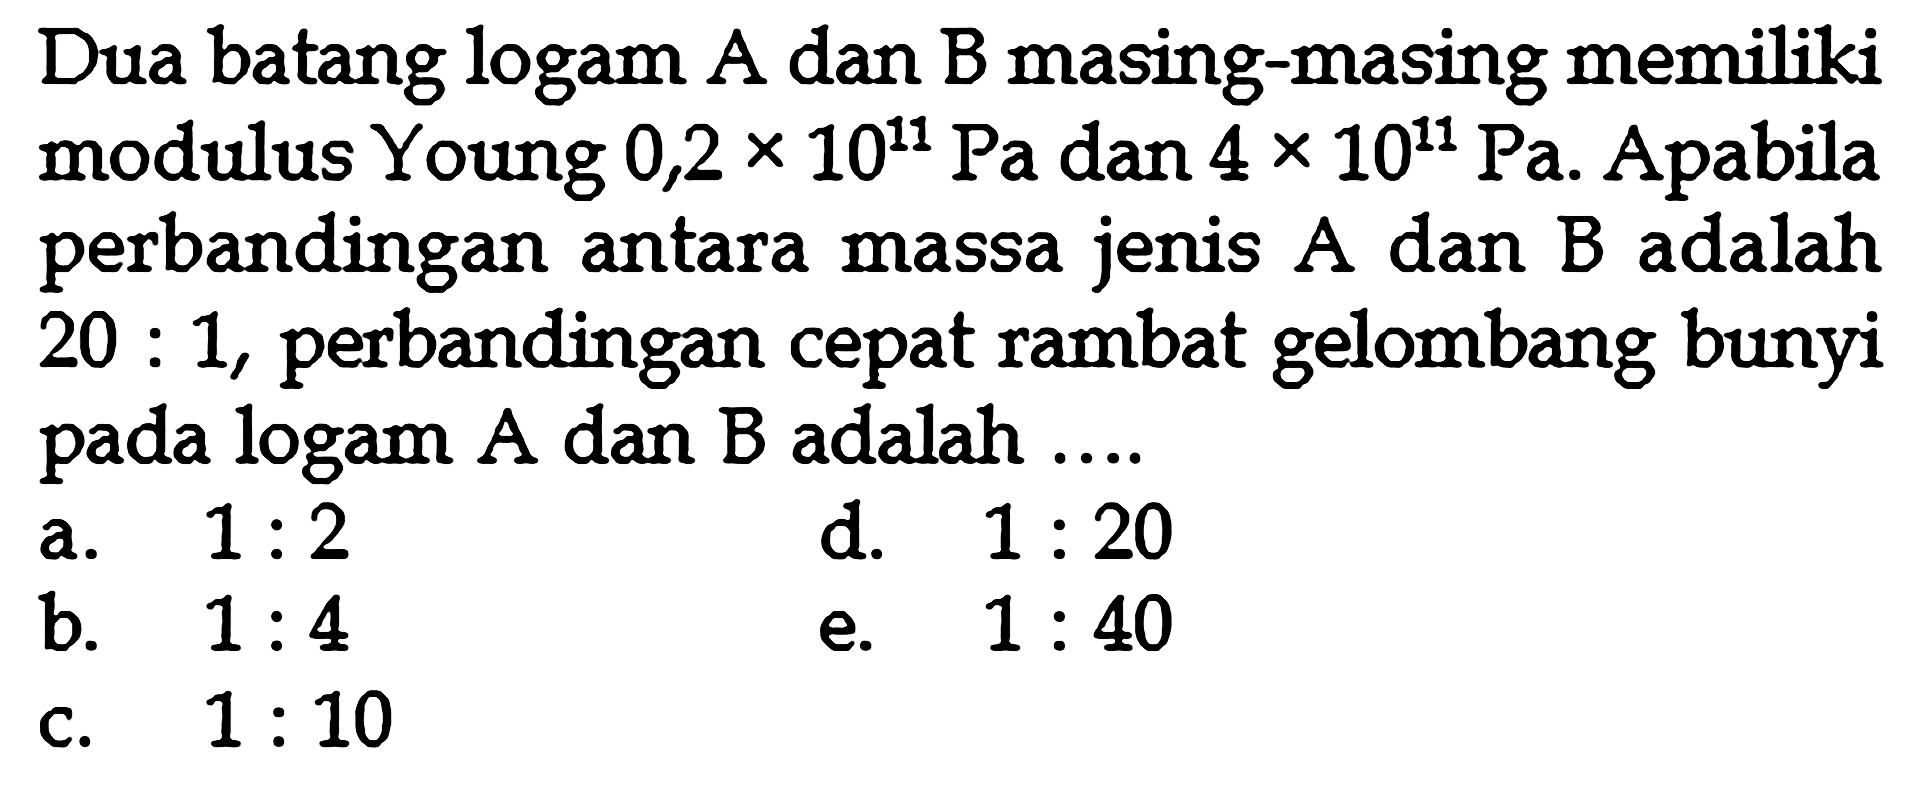 Dua batang logam A dan B masing-masing memiliki modulus Young  0,2x 10^11 Pa  dan  4 x 10^11 Pa . Apabila perbandingan antara massa jenis  A  dan  B  adalah  20: 1 , perbandingan cepat rambat gelombang bunyi pada logam A dan B adalah ....